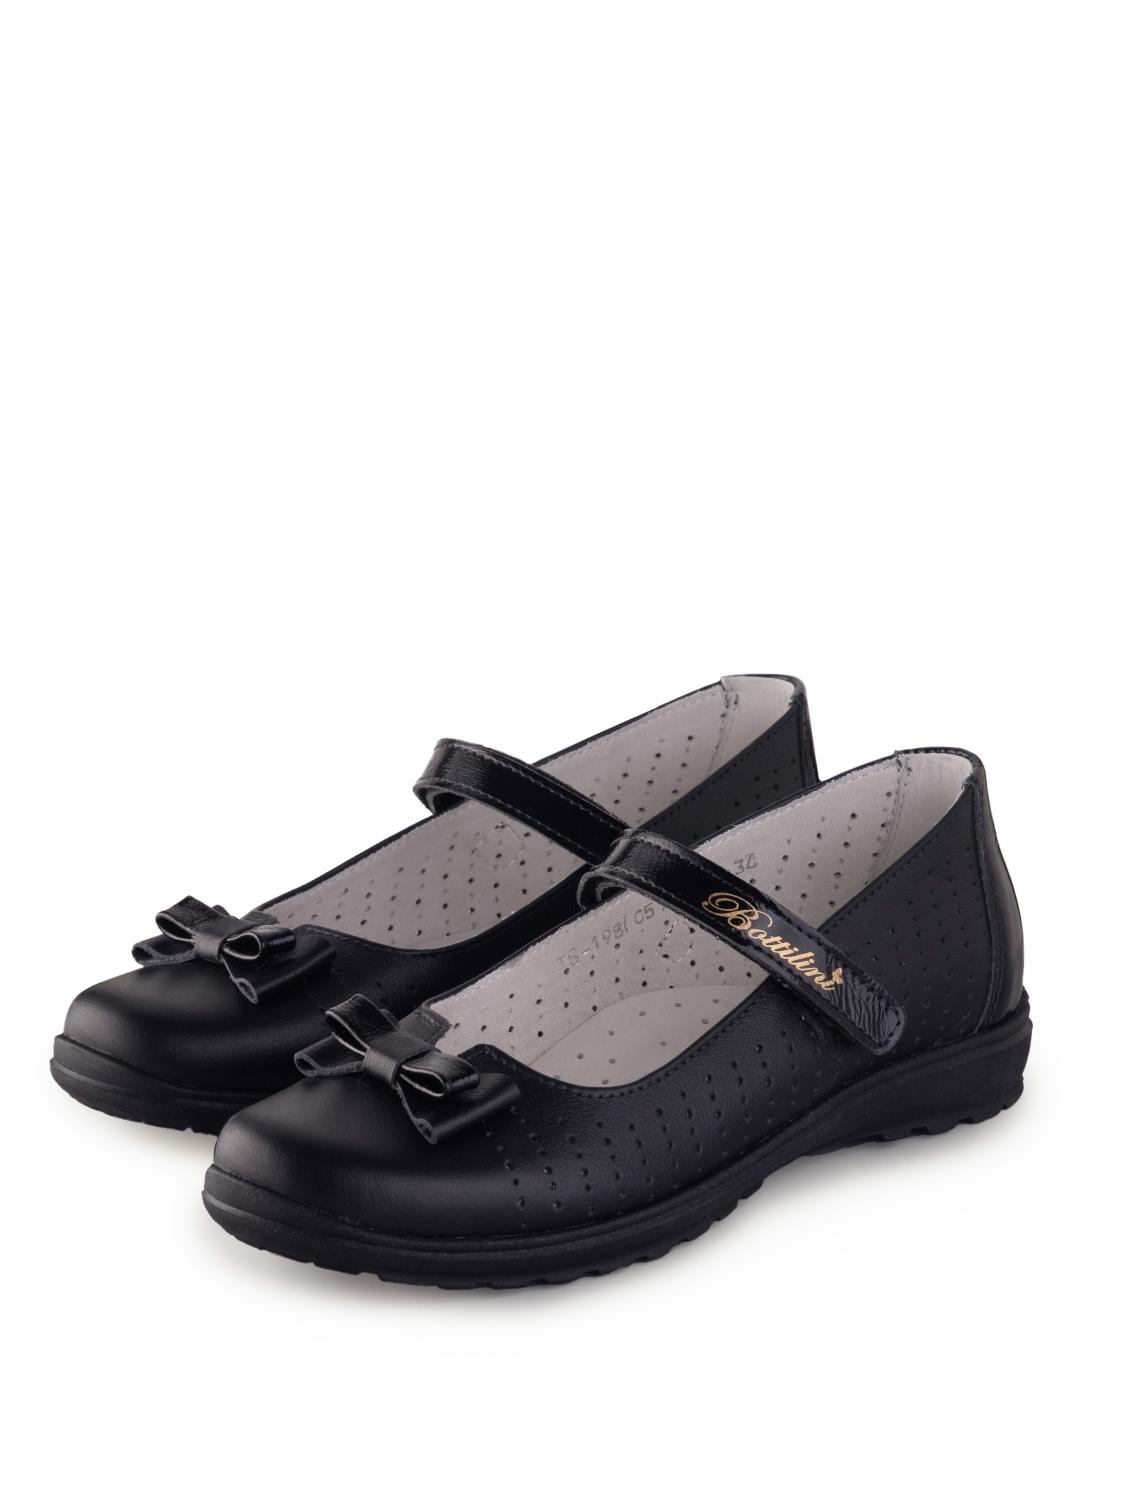 Bottilini TS-198(05) туфли цвет черный (р.31-34) (поступление 27.07.2023г.) цена 3350руб.